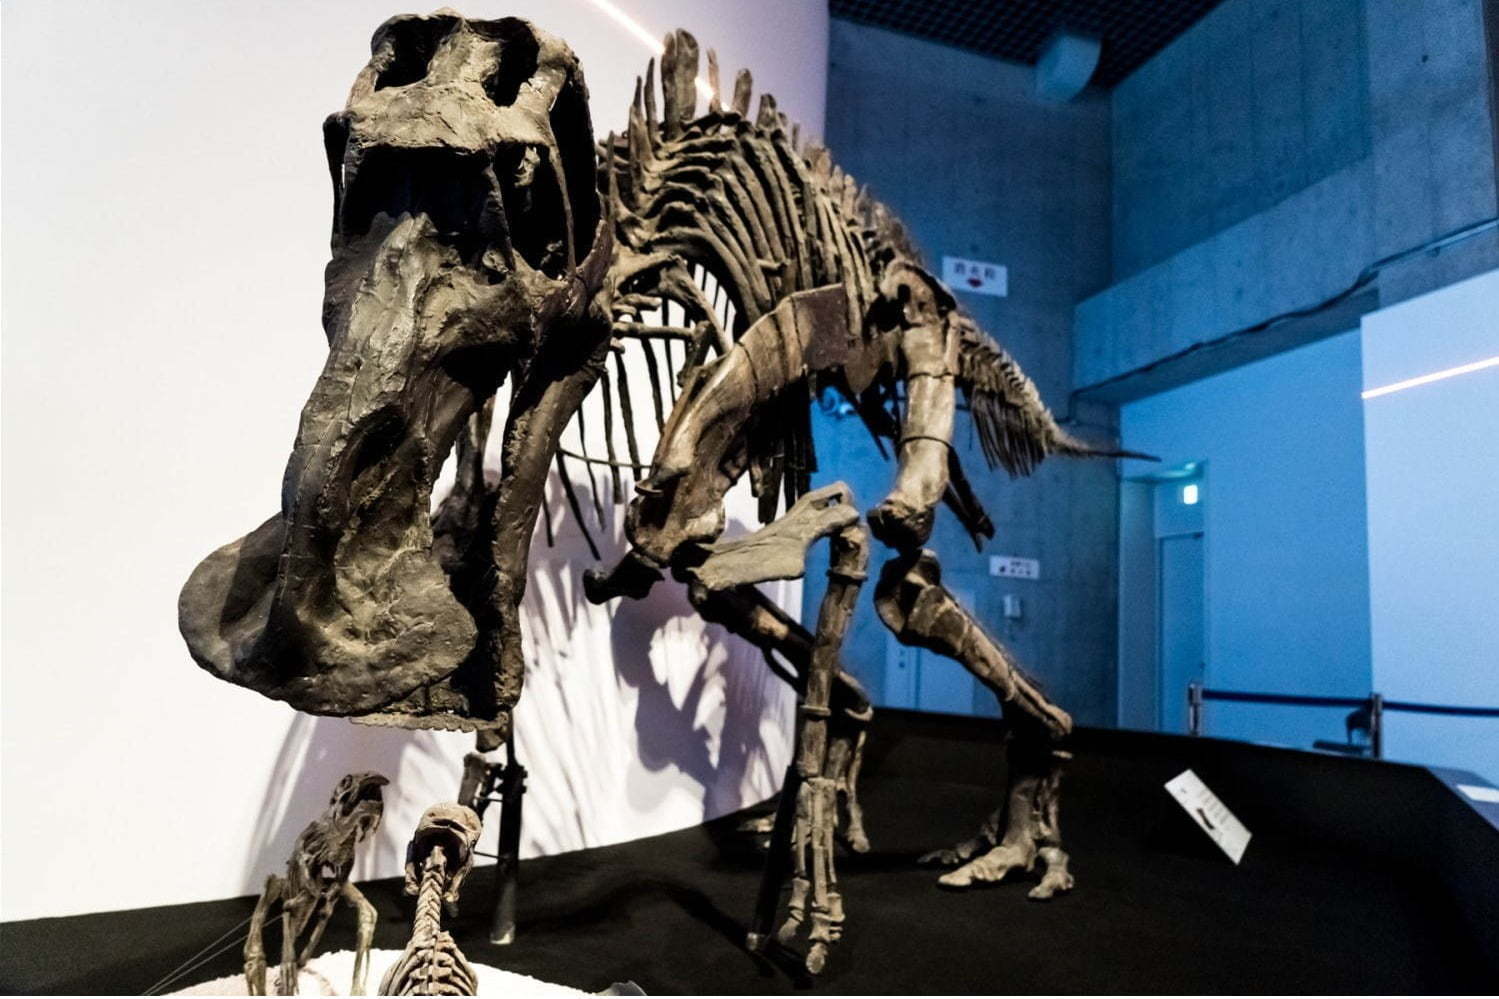 国立科学博物館 恐竜博19 謎の恐竜 デイノケイルス全貌初公開 最新の恐竜生物学も ファッションプレス